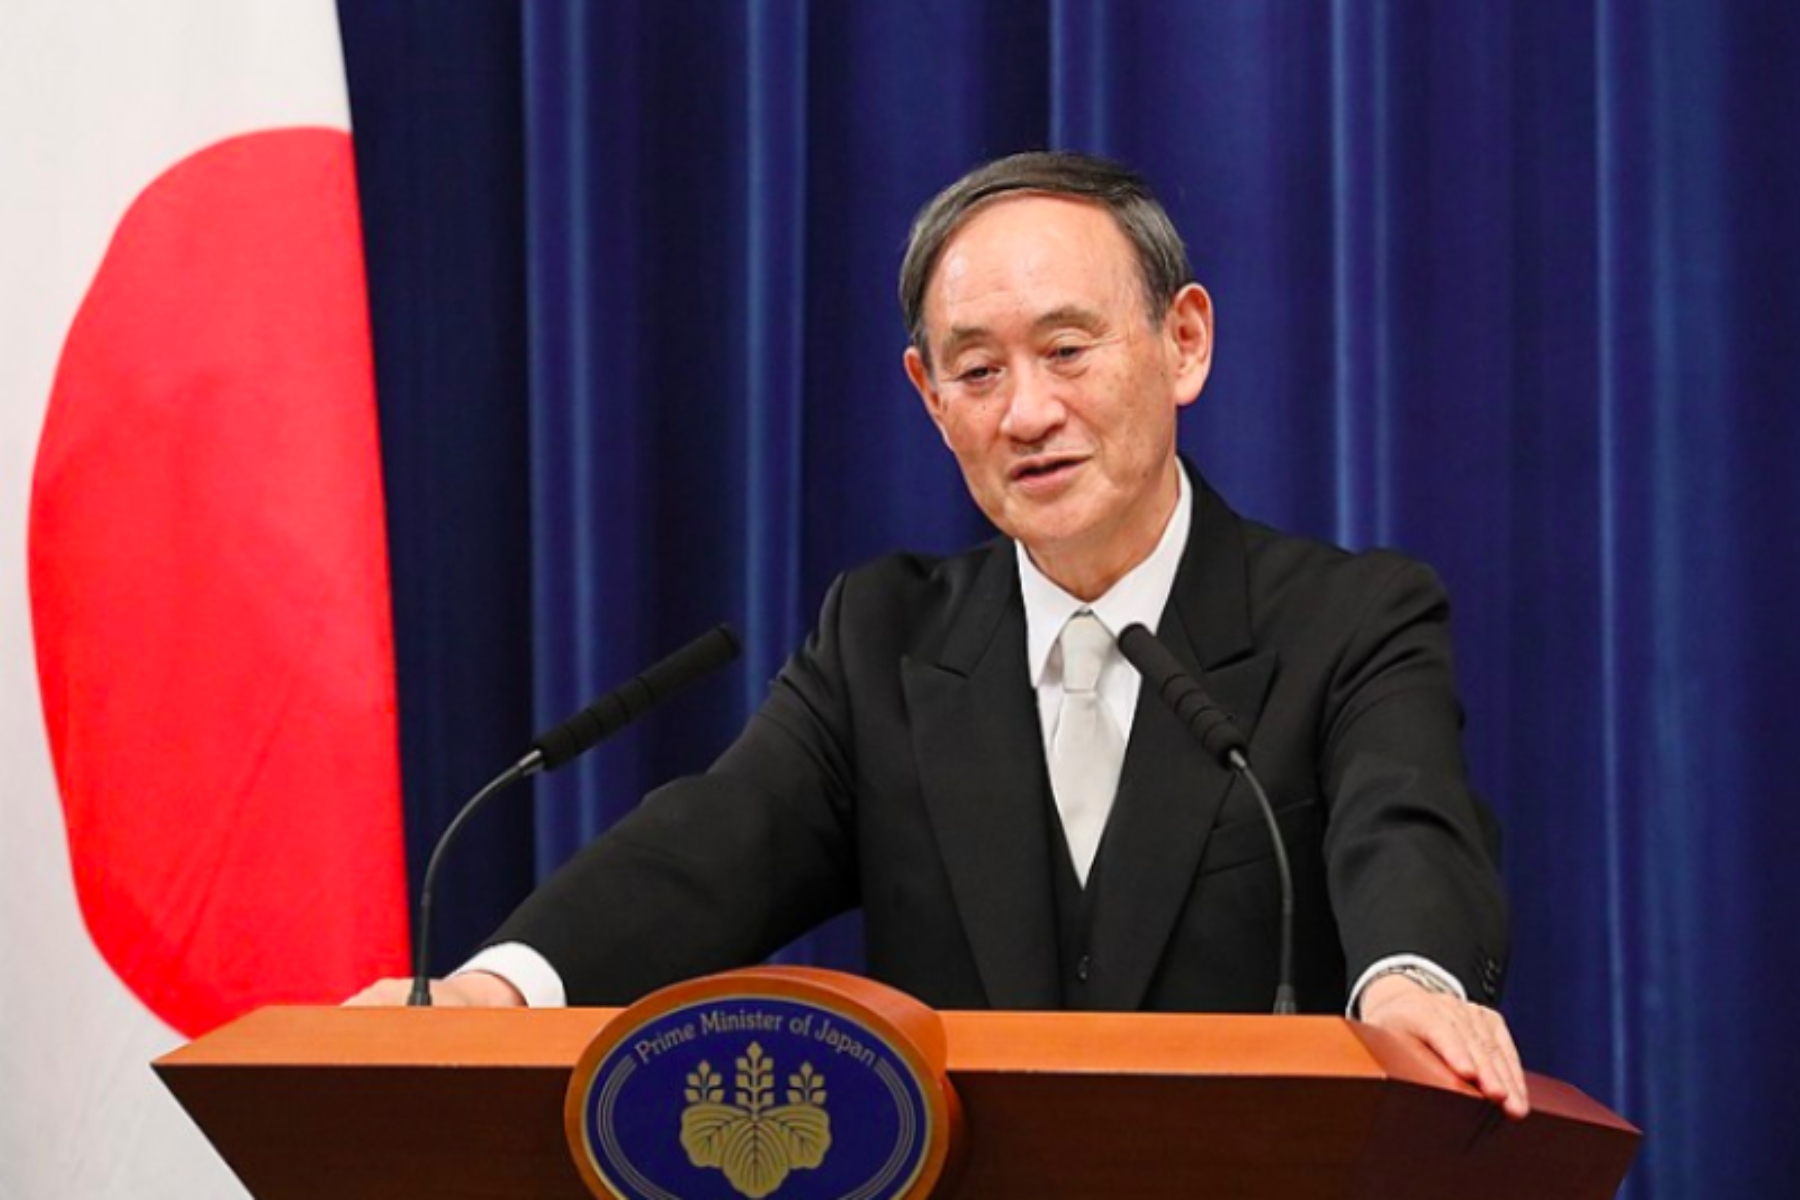 Ιαπωνία: Θετικός ο Πρωθυπουργός στον κορωνοϊό εν μέσω έξαρσης κρουσμάτων